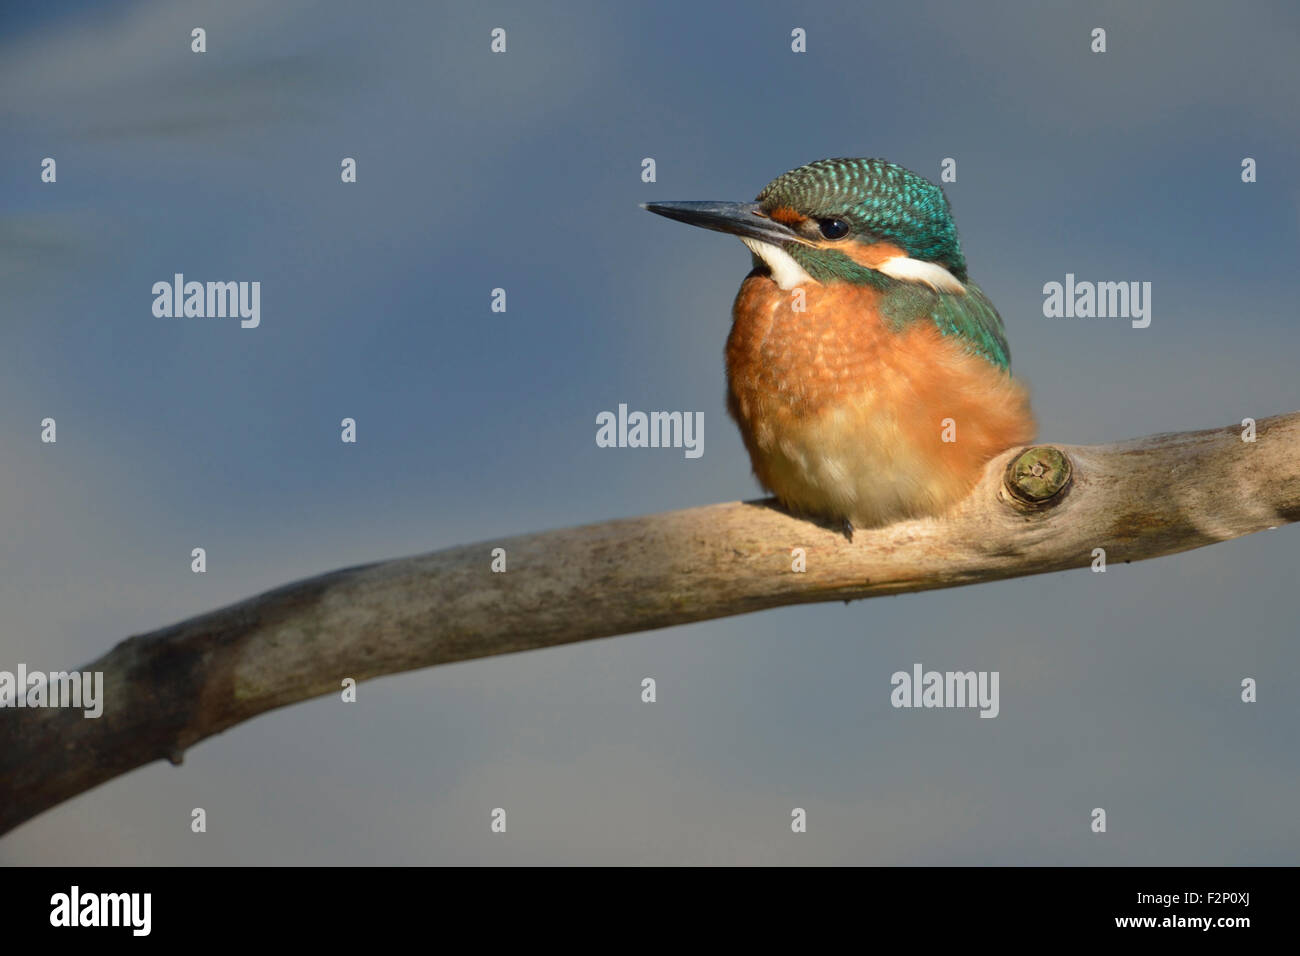 Niedliche Eisvogel / Kingfisher / Eisvogel (Alcedo Atthis) sitzen in einem Scheinwerfer vor nettes blauen Hintergrund. Stockfoto